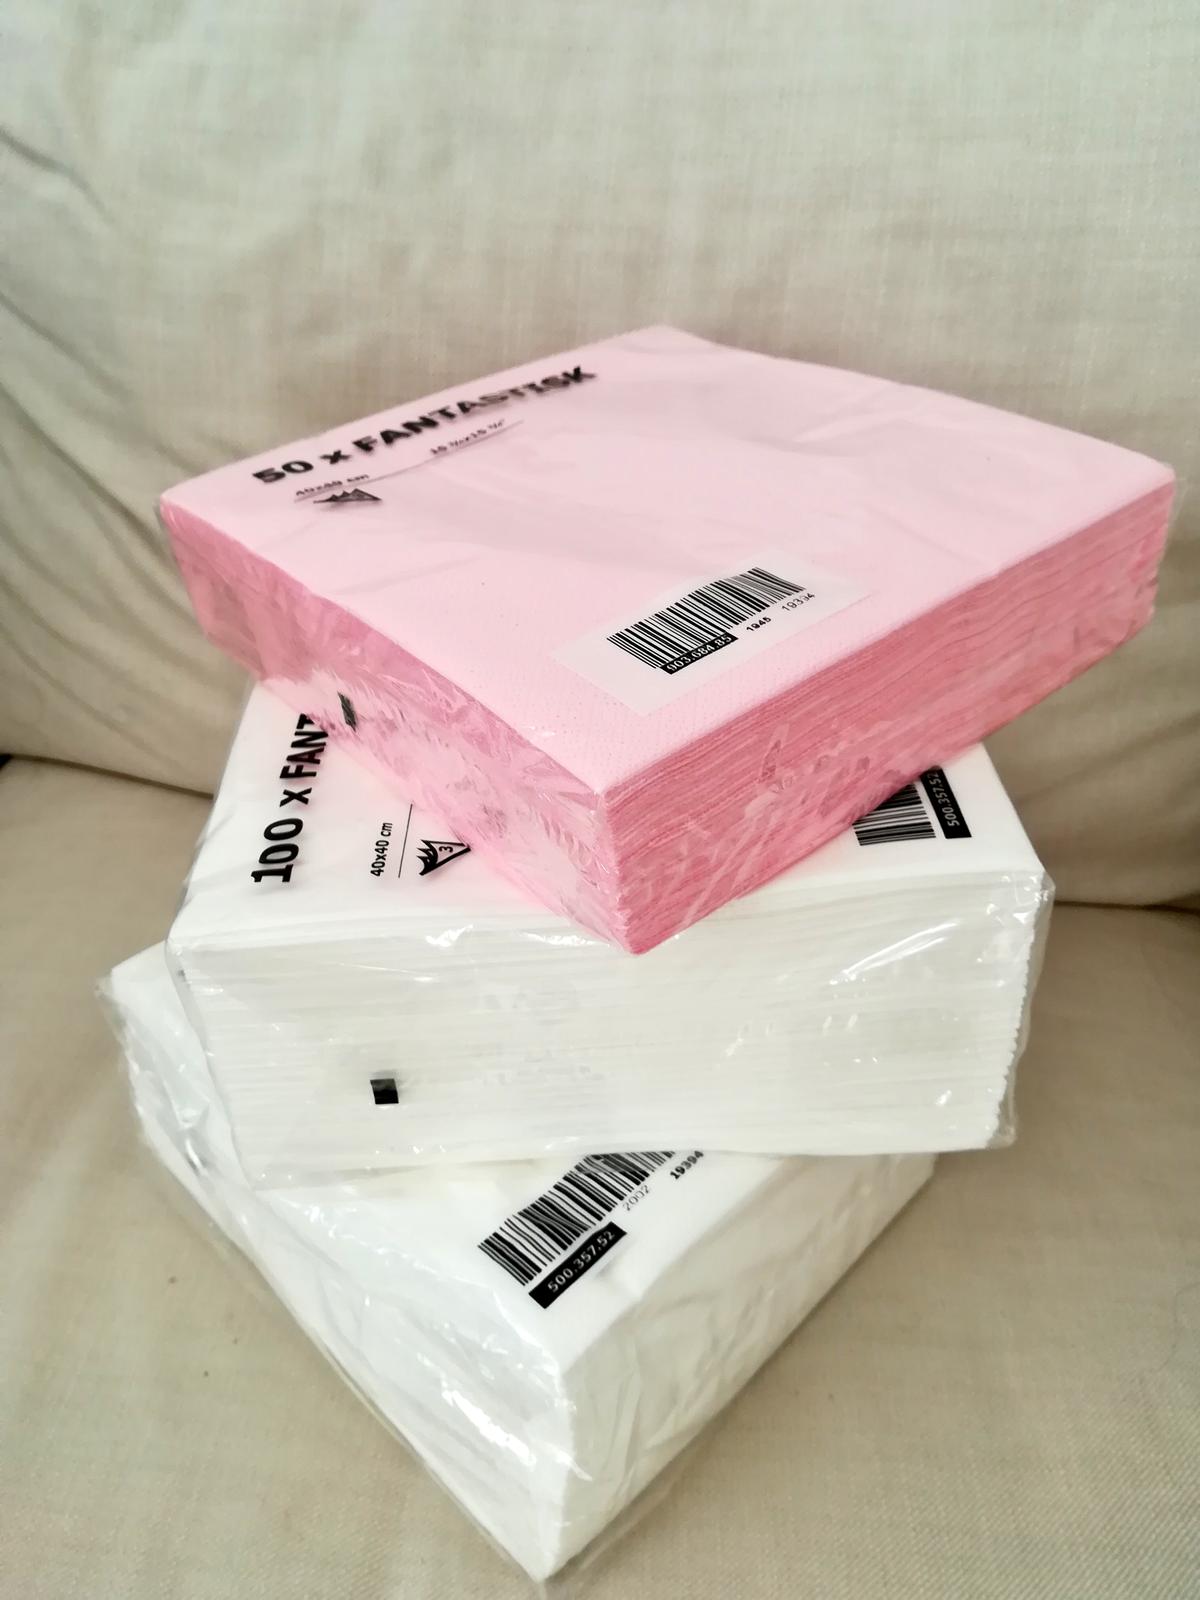 Velké ubrousky IKEA bílé a růžové - Obrázek č. 1